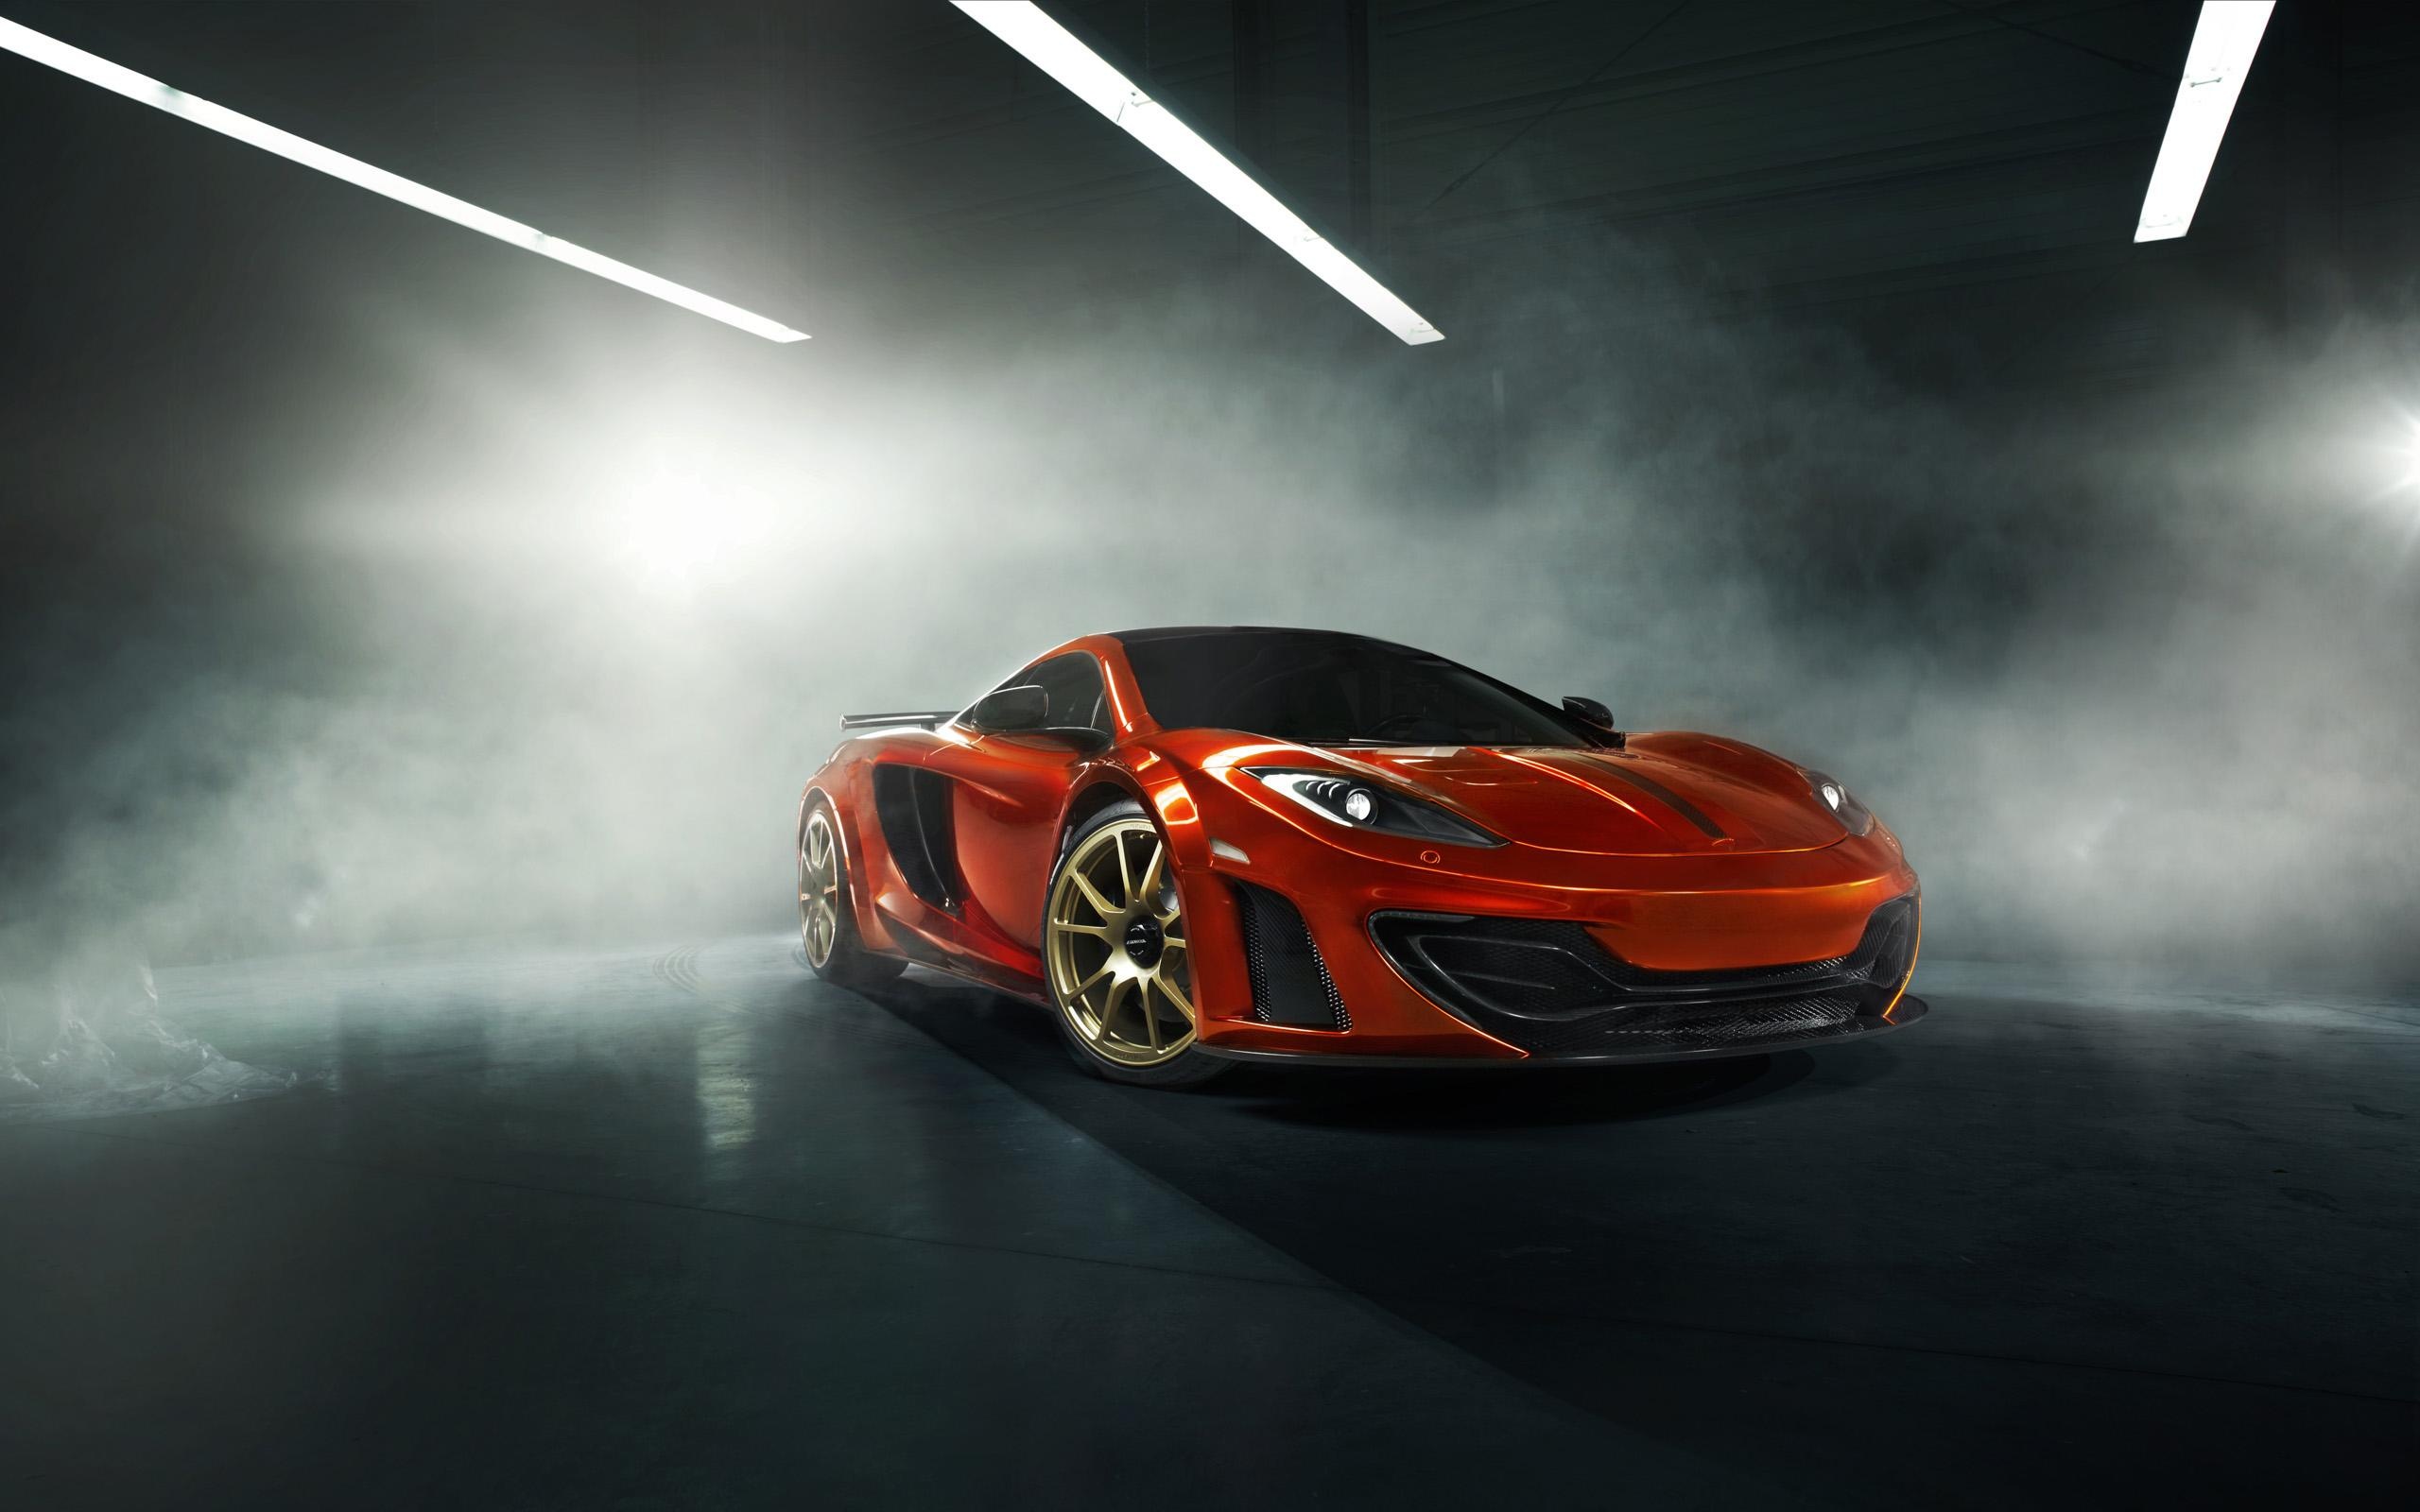 McLaren 12C, Exquisite wallpapers, High performance, Speed unleashed, 2560x1600 HD Desktop